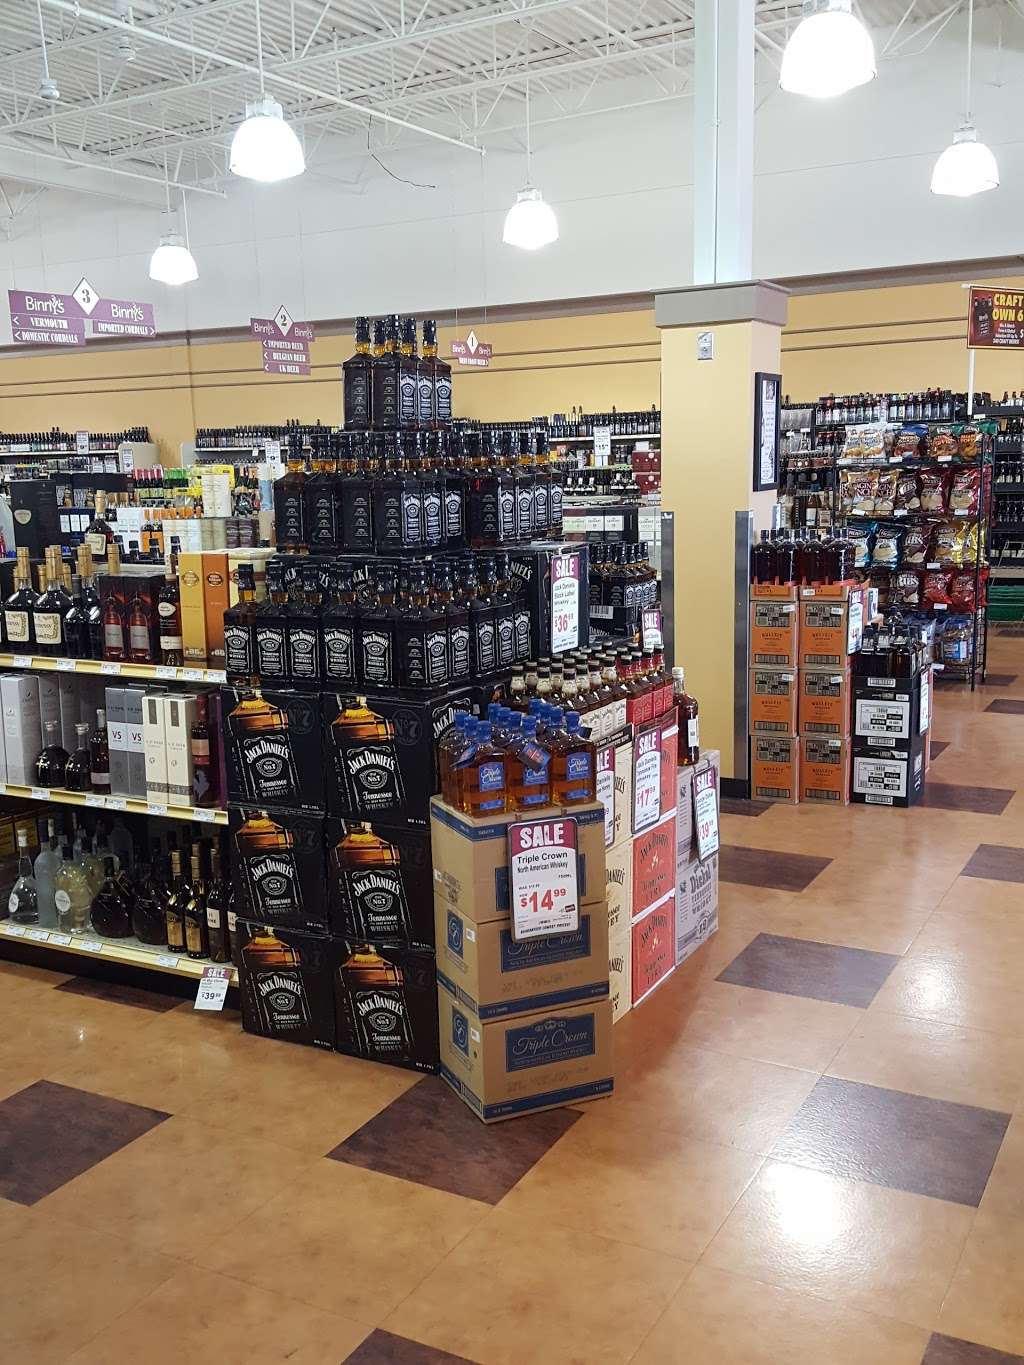 Binnys Beverage Depot | 844 S Randall Rd, Algonquin, IL 60102, USA | Phone: (847) 458-2470